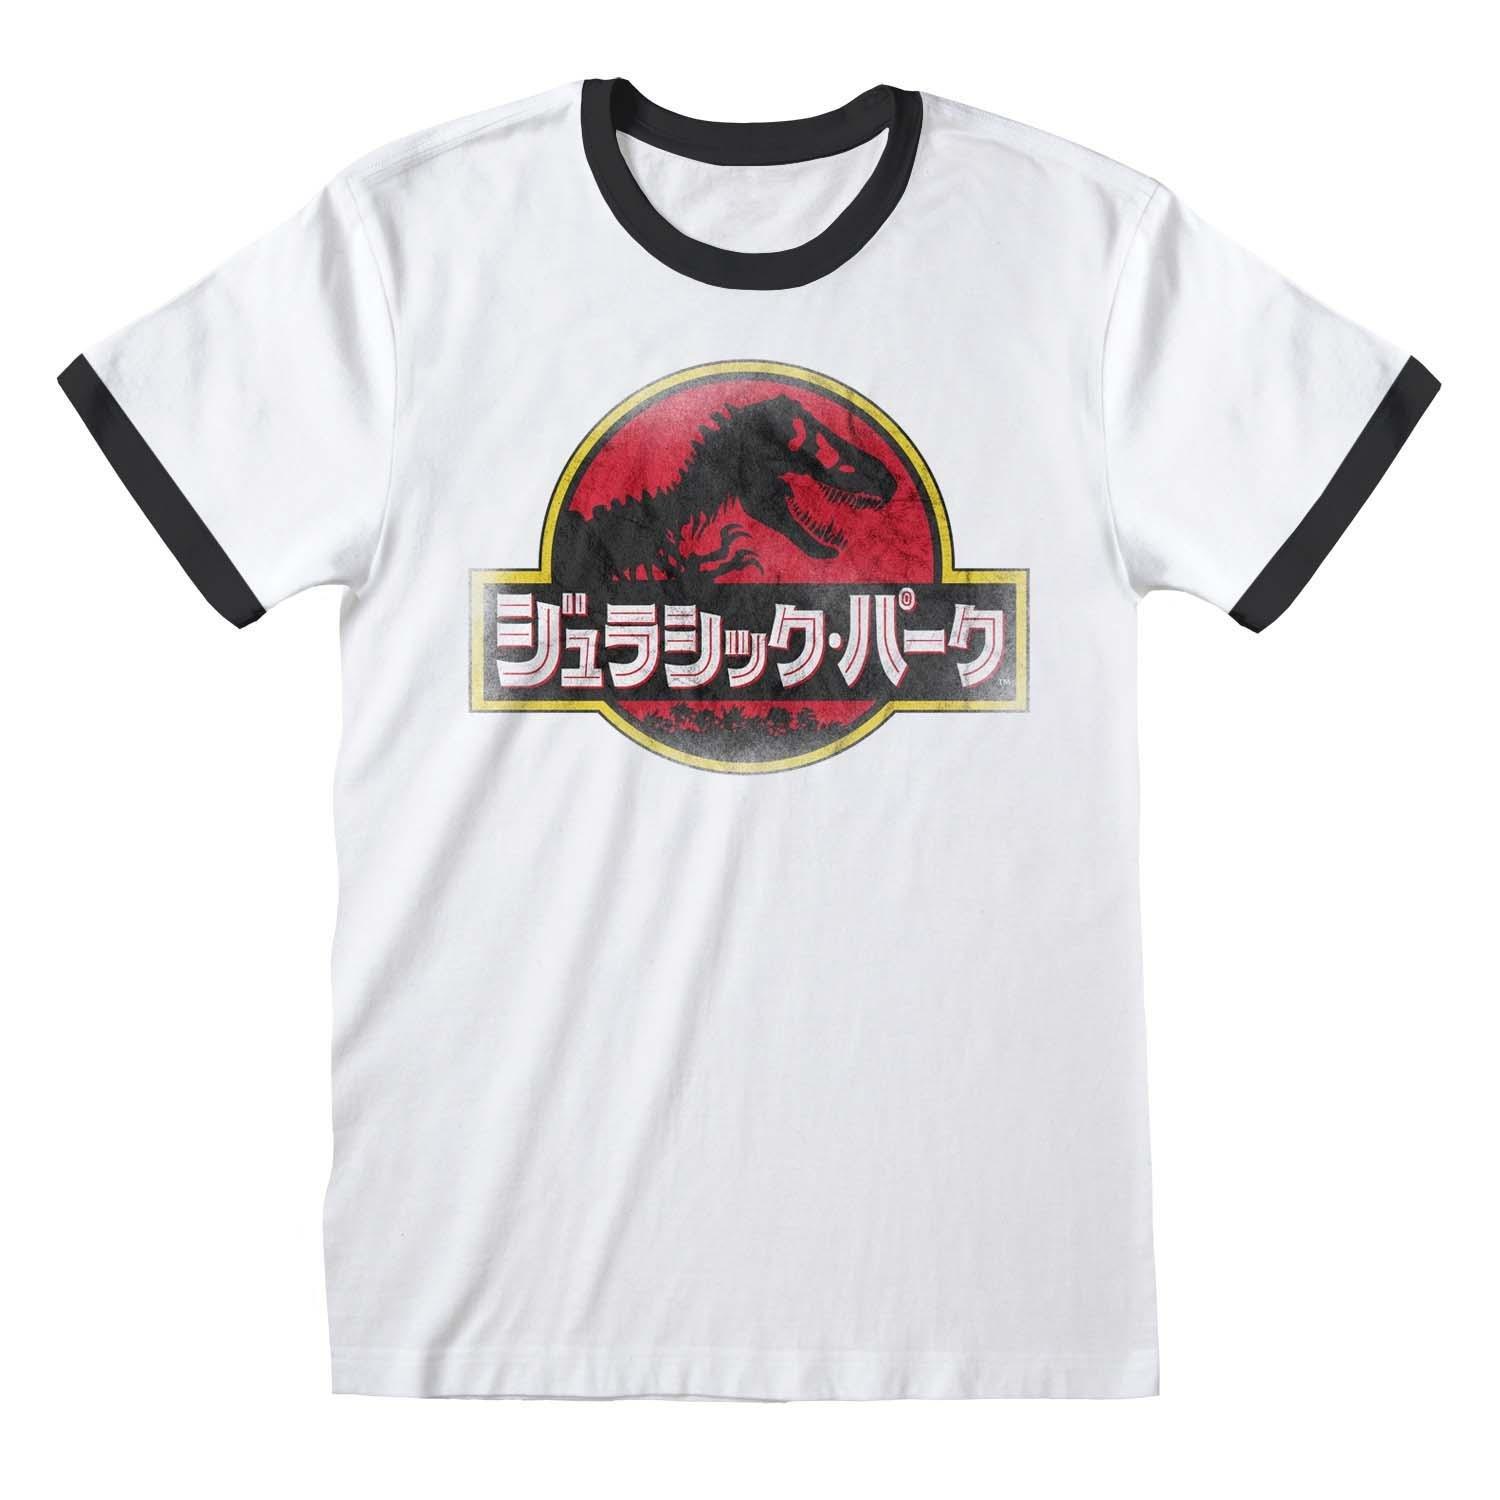 T-shirt Damen Weiss Bedruckt XL von Jurassic Park